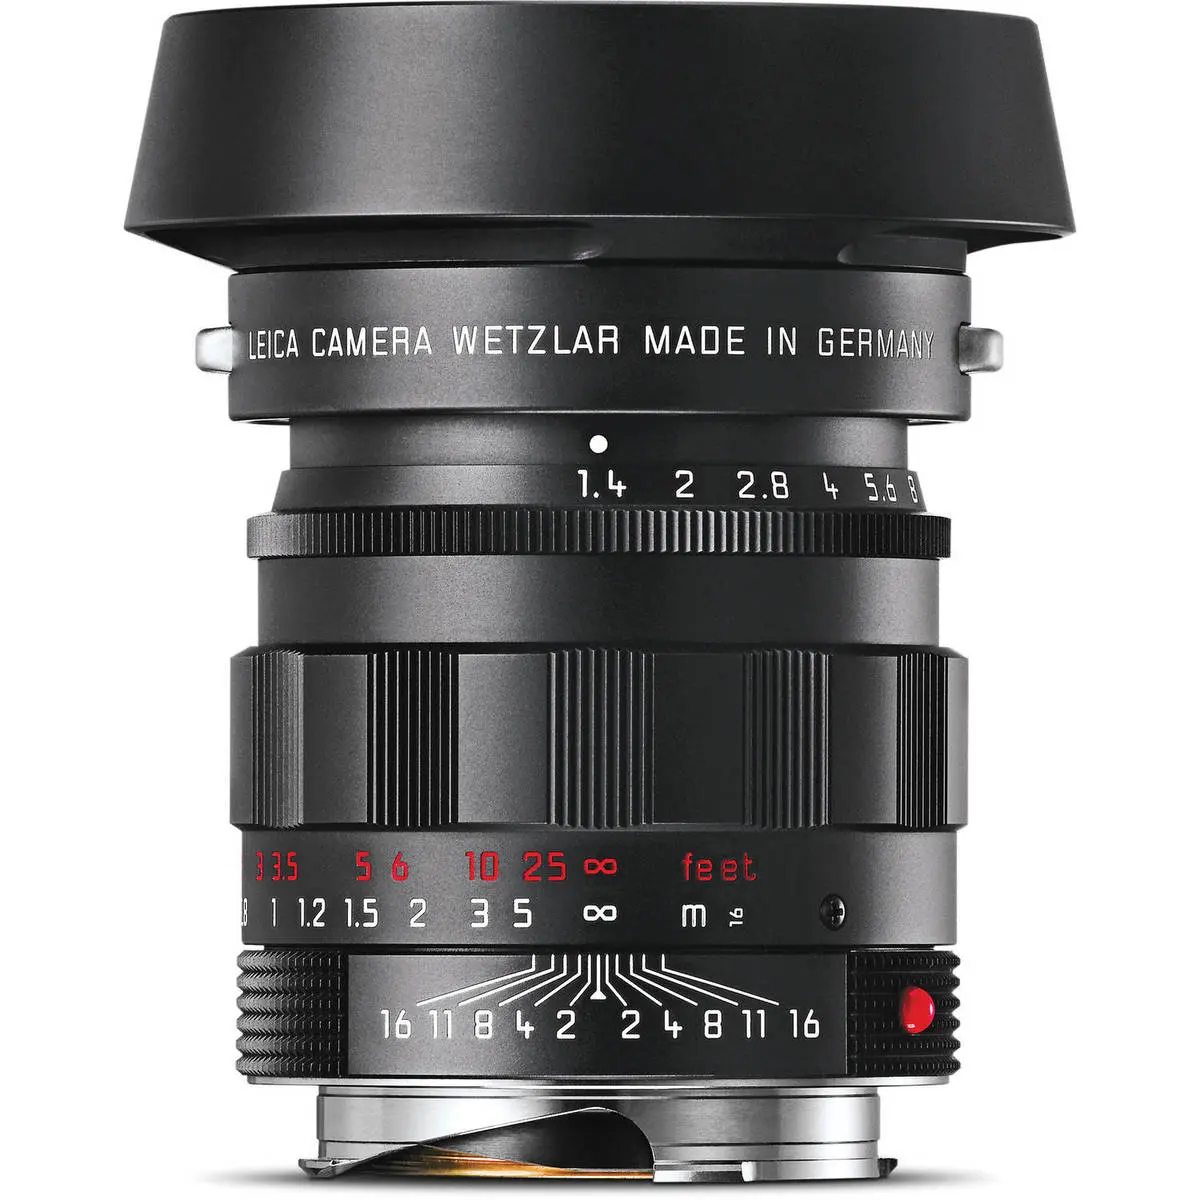 1. LEICA SUMMILUX-M 50 mm f/1.4 ASPH Black Chrome Lens